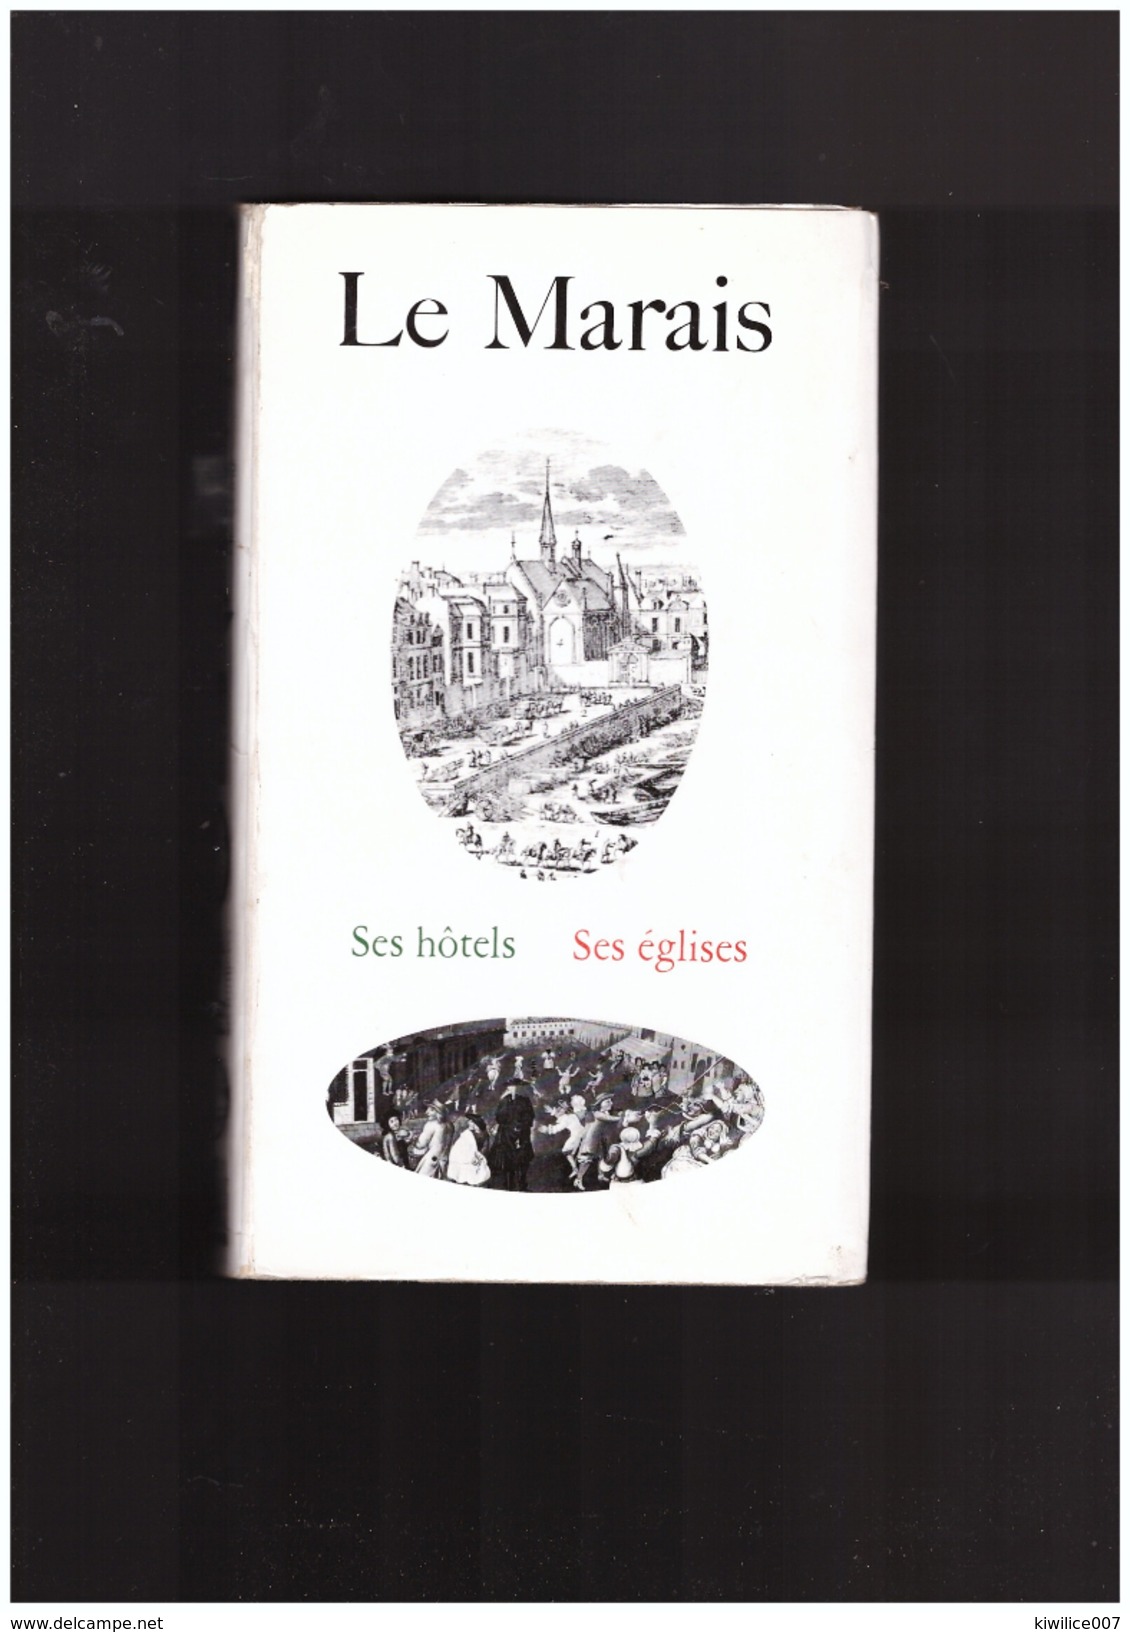 Le Marais   Ses Hotels   Ses églises - Paris